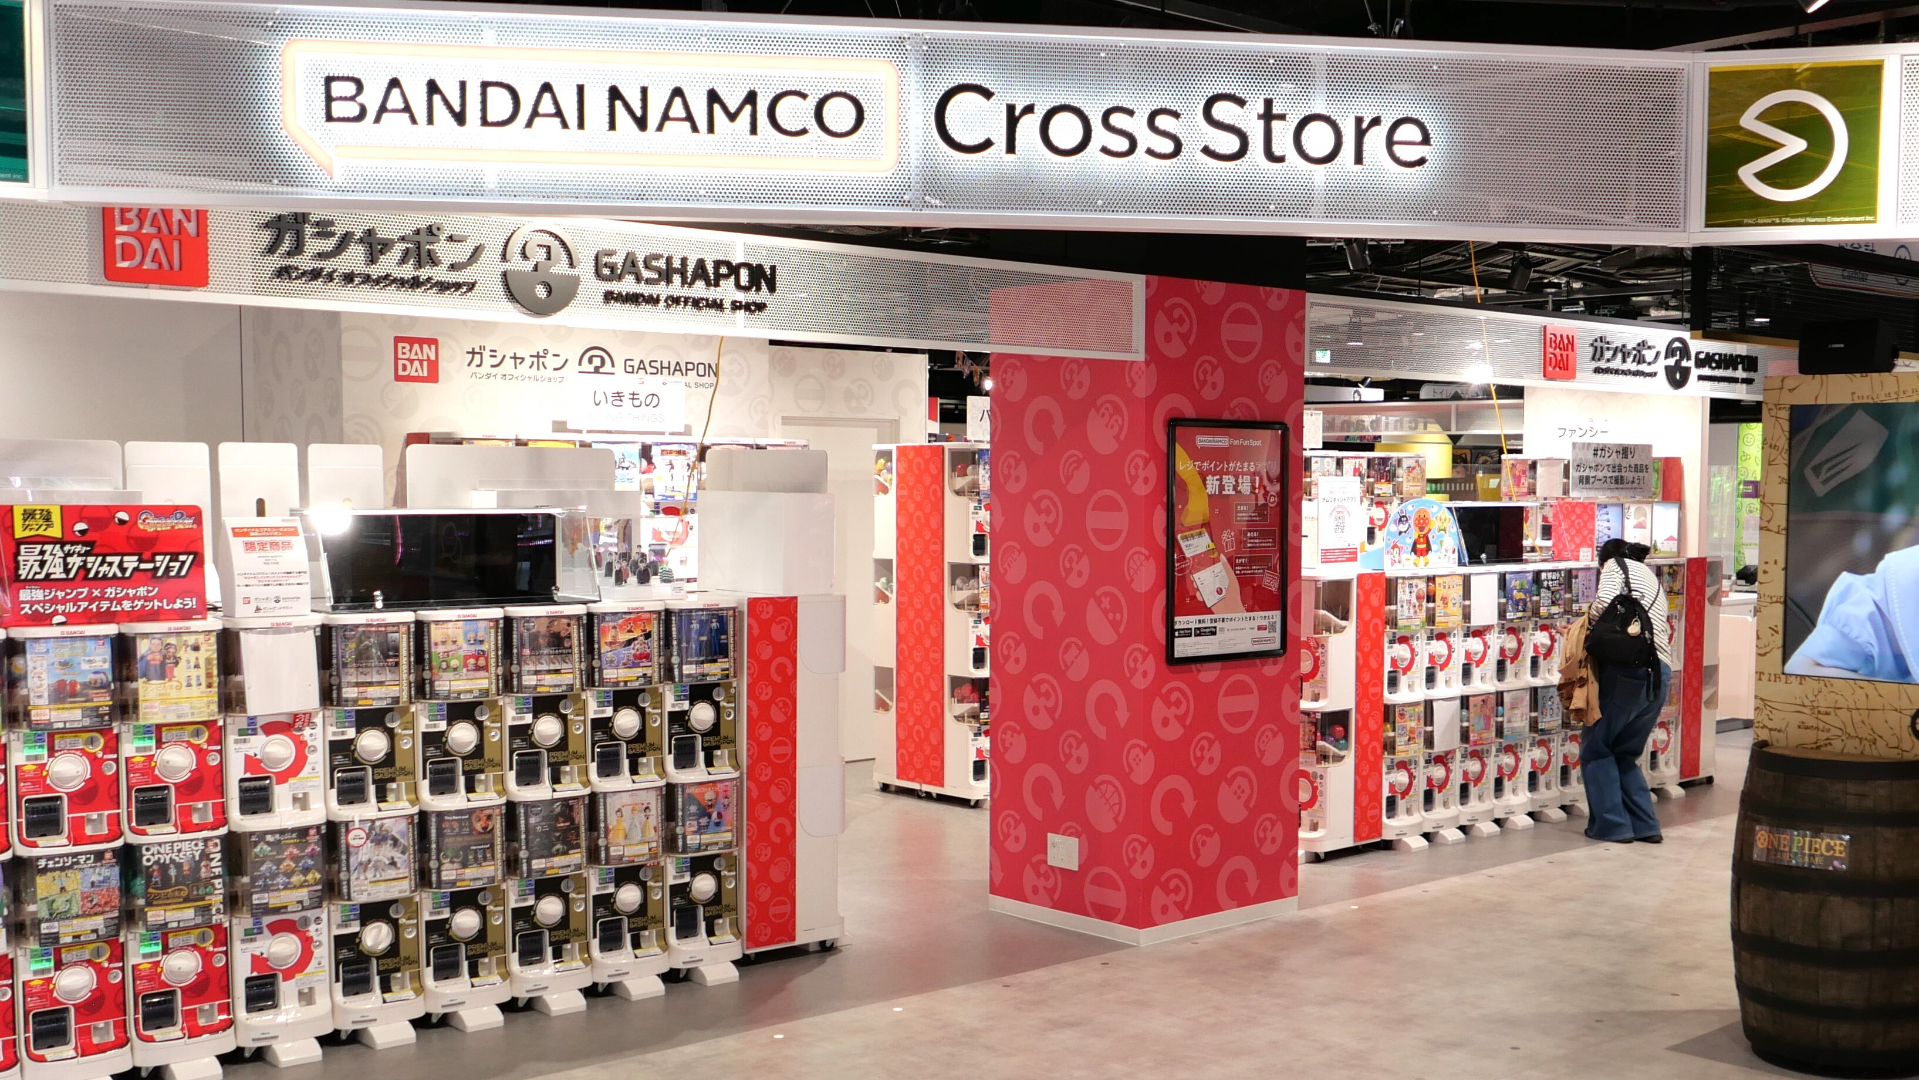 Bandai Namco Cross Store  Bandai Namco Cross Store